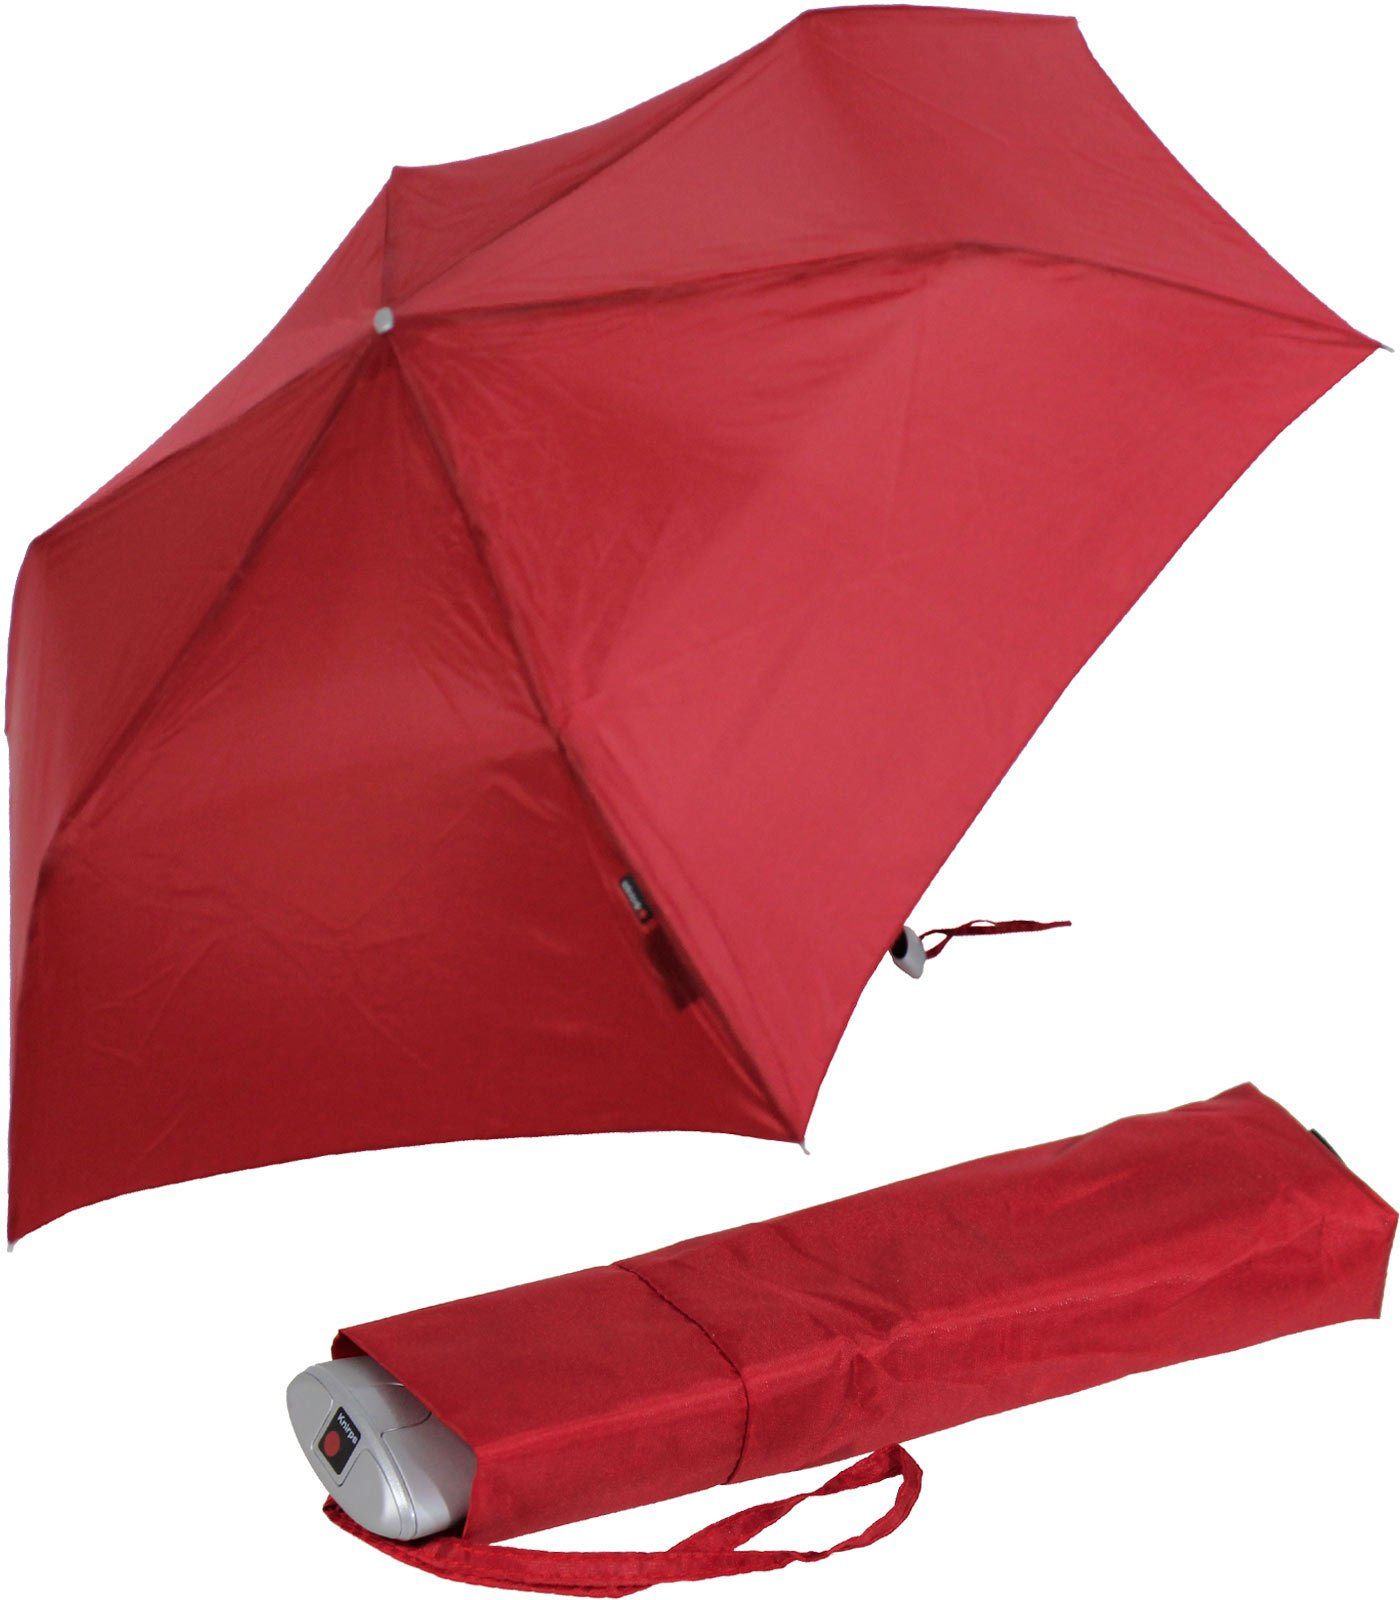 für Tasche, Taschenregenschirm jeden jede Knirps® für Schirm, Begleiter, Notfall flacher, passend treuer stabiler ein